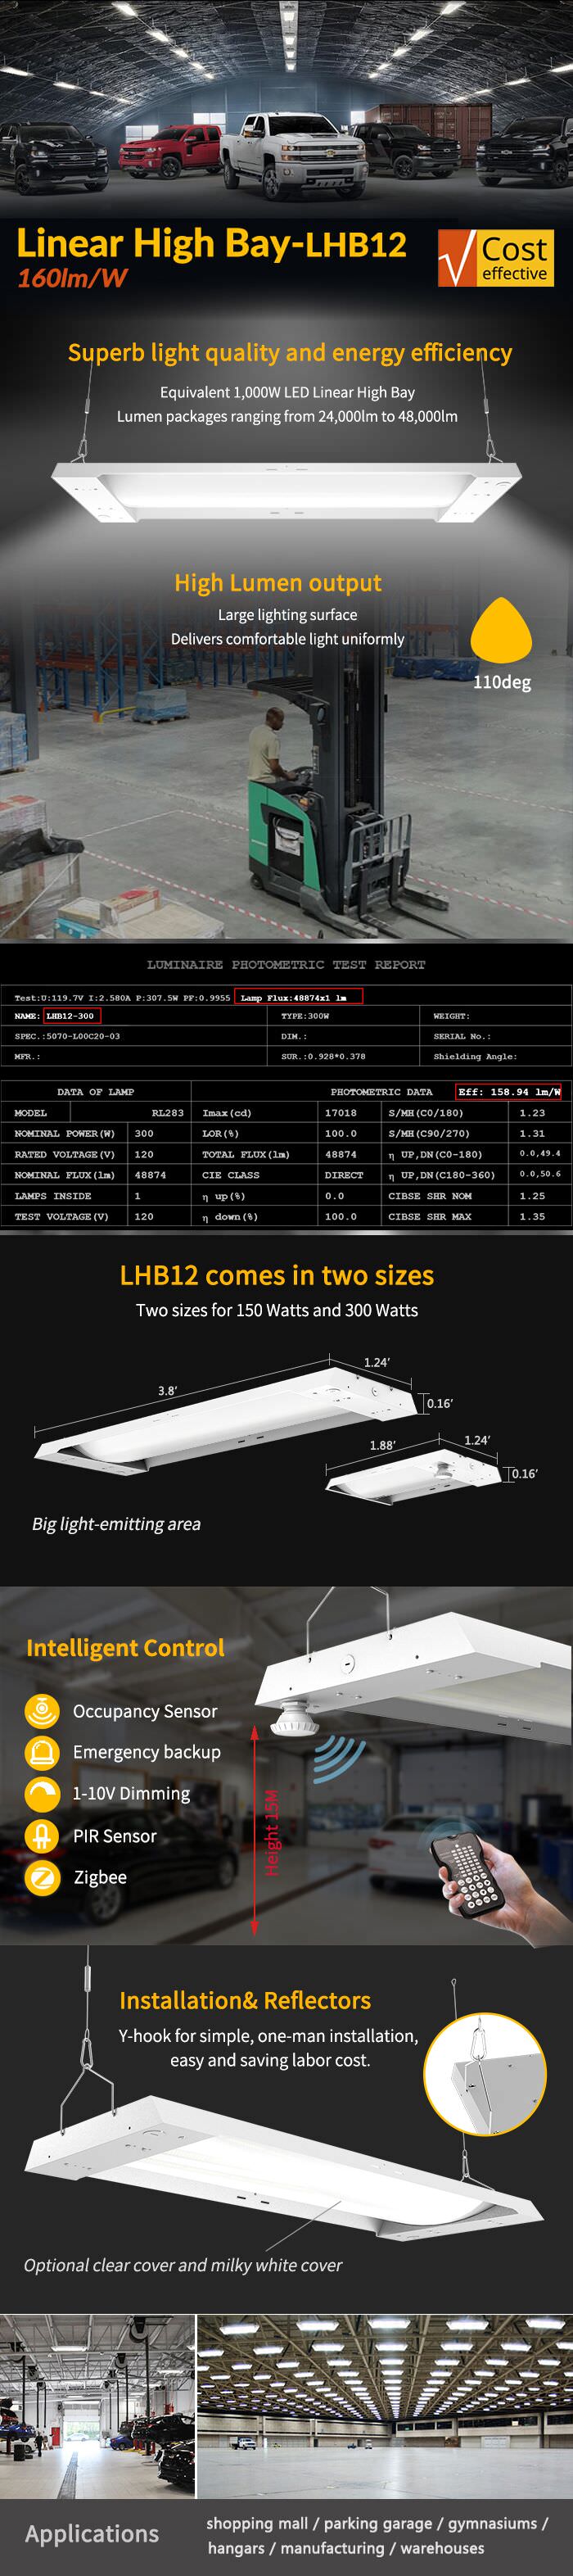 LHB12 high lumen output linear high bay light